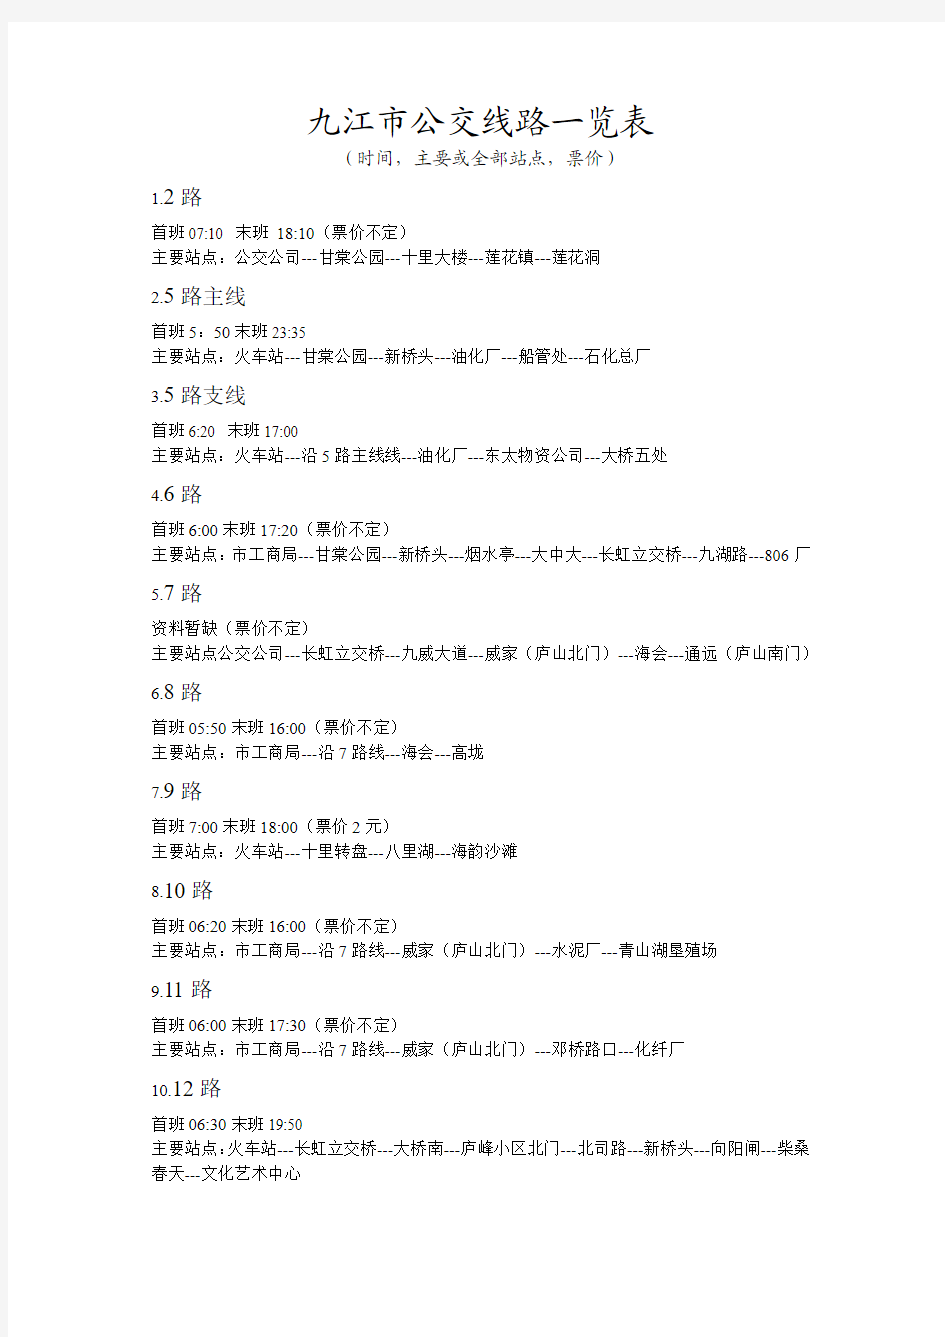 九江市公交线路一览表